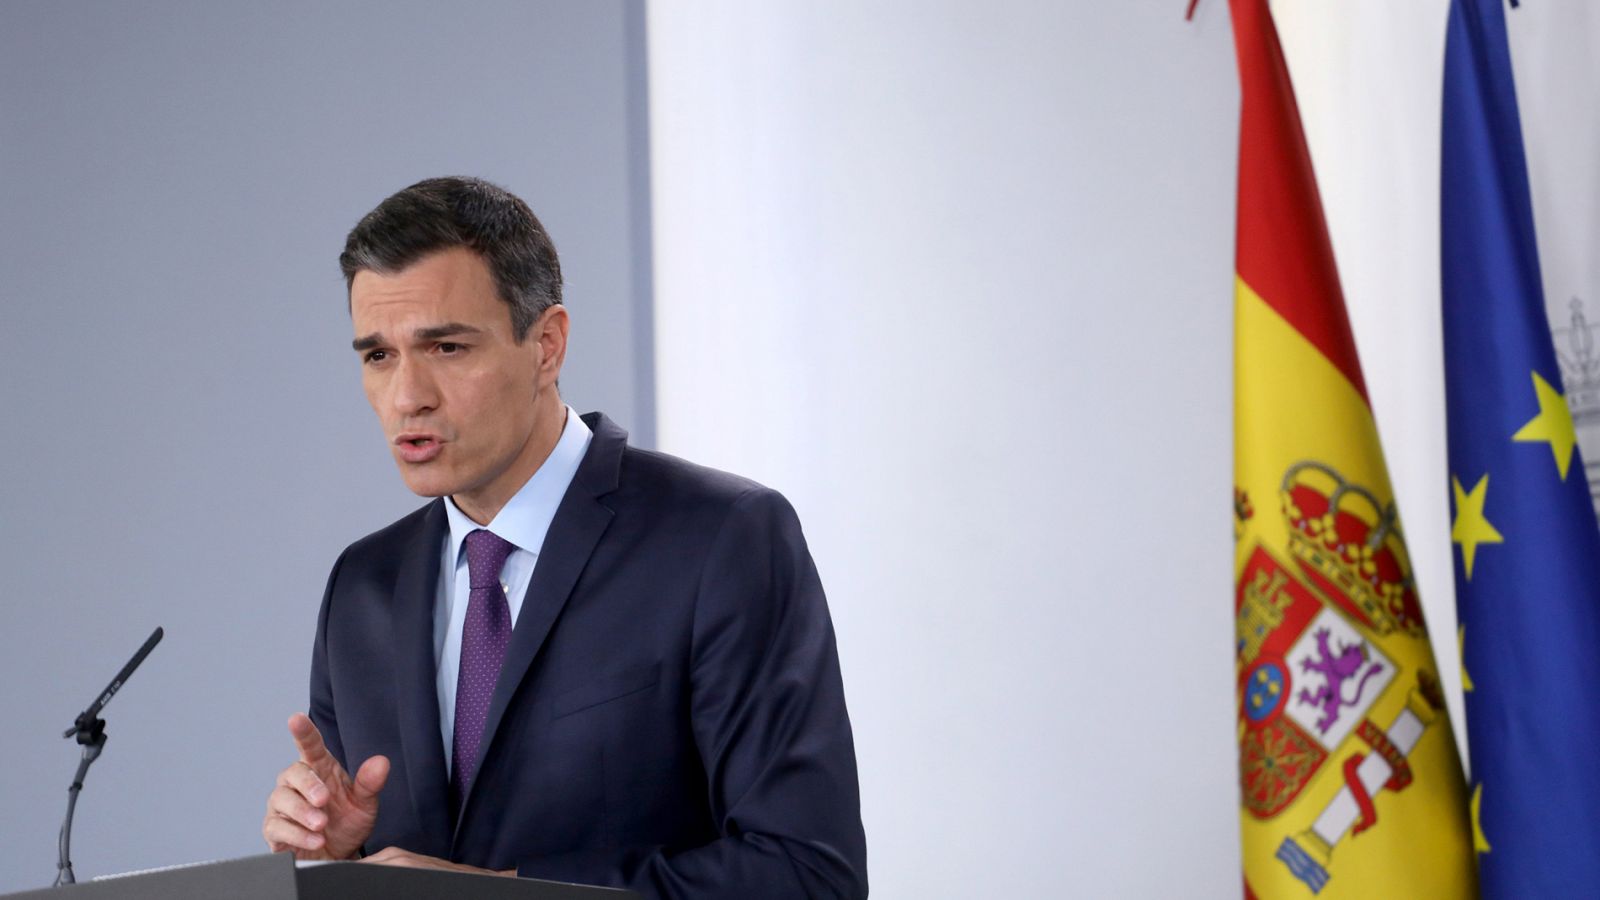 Pensiones: Sánchez anuncia la revalorización de las pensiones "por encima del IPC"